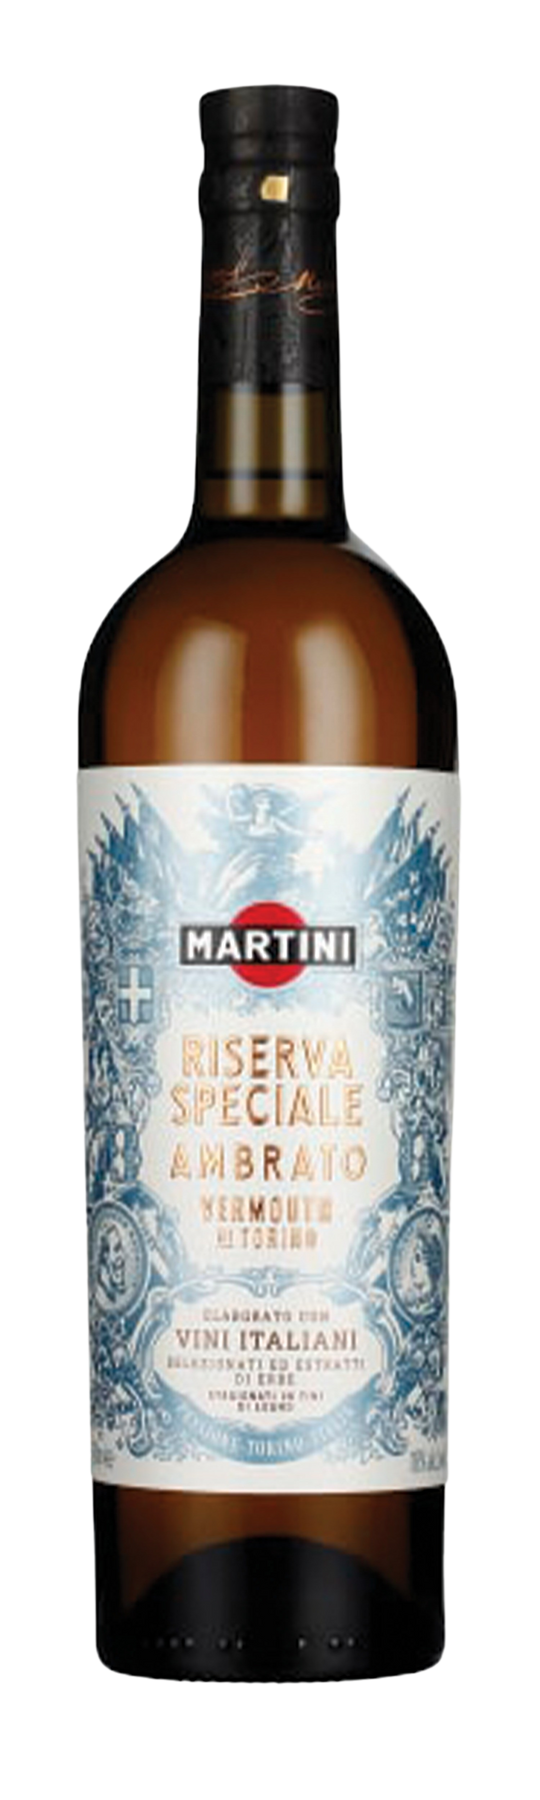 Martini Riserva Speciale Ambrato 18% 75cl Vermouth di Torino